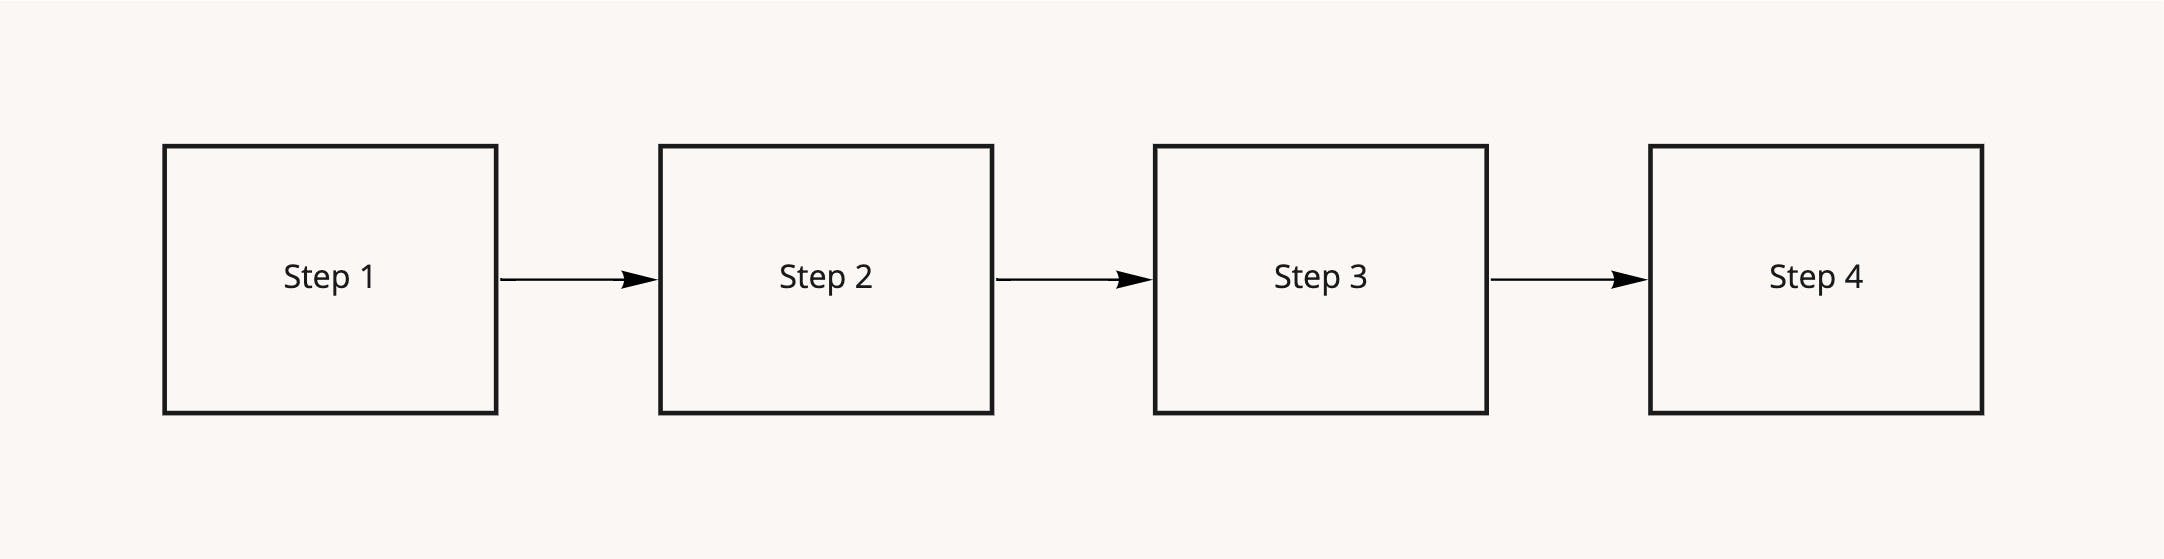 [Template] Client Workflow and Schema - Client Workflow.jpg